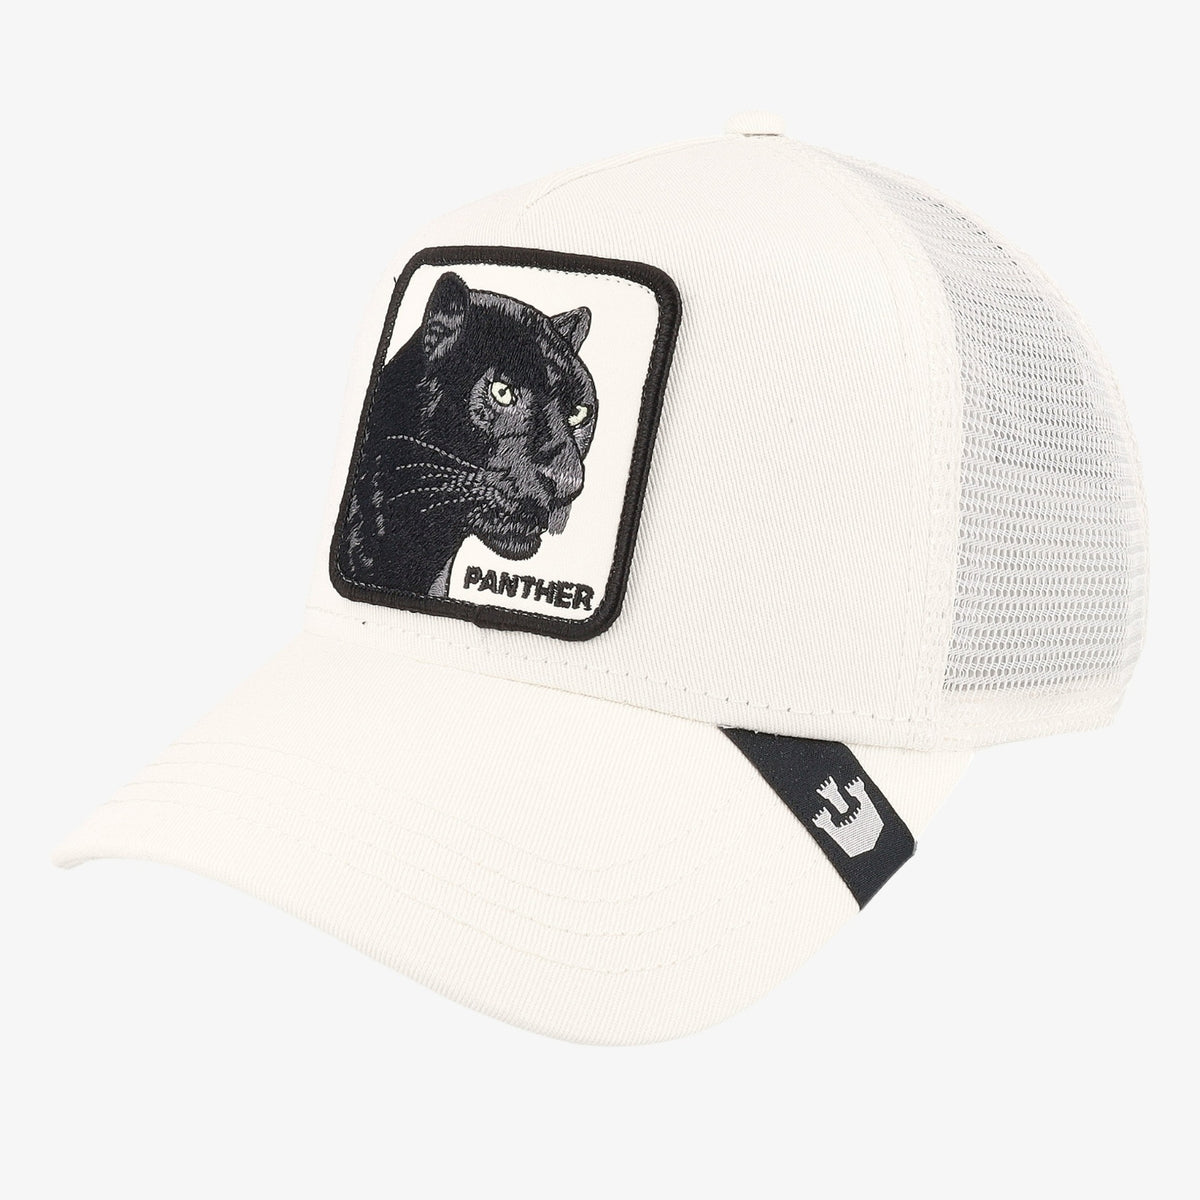 גורין ברוס Goorin Bros כובע מצחייה לבן White Black Panther